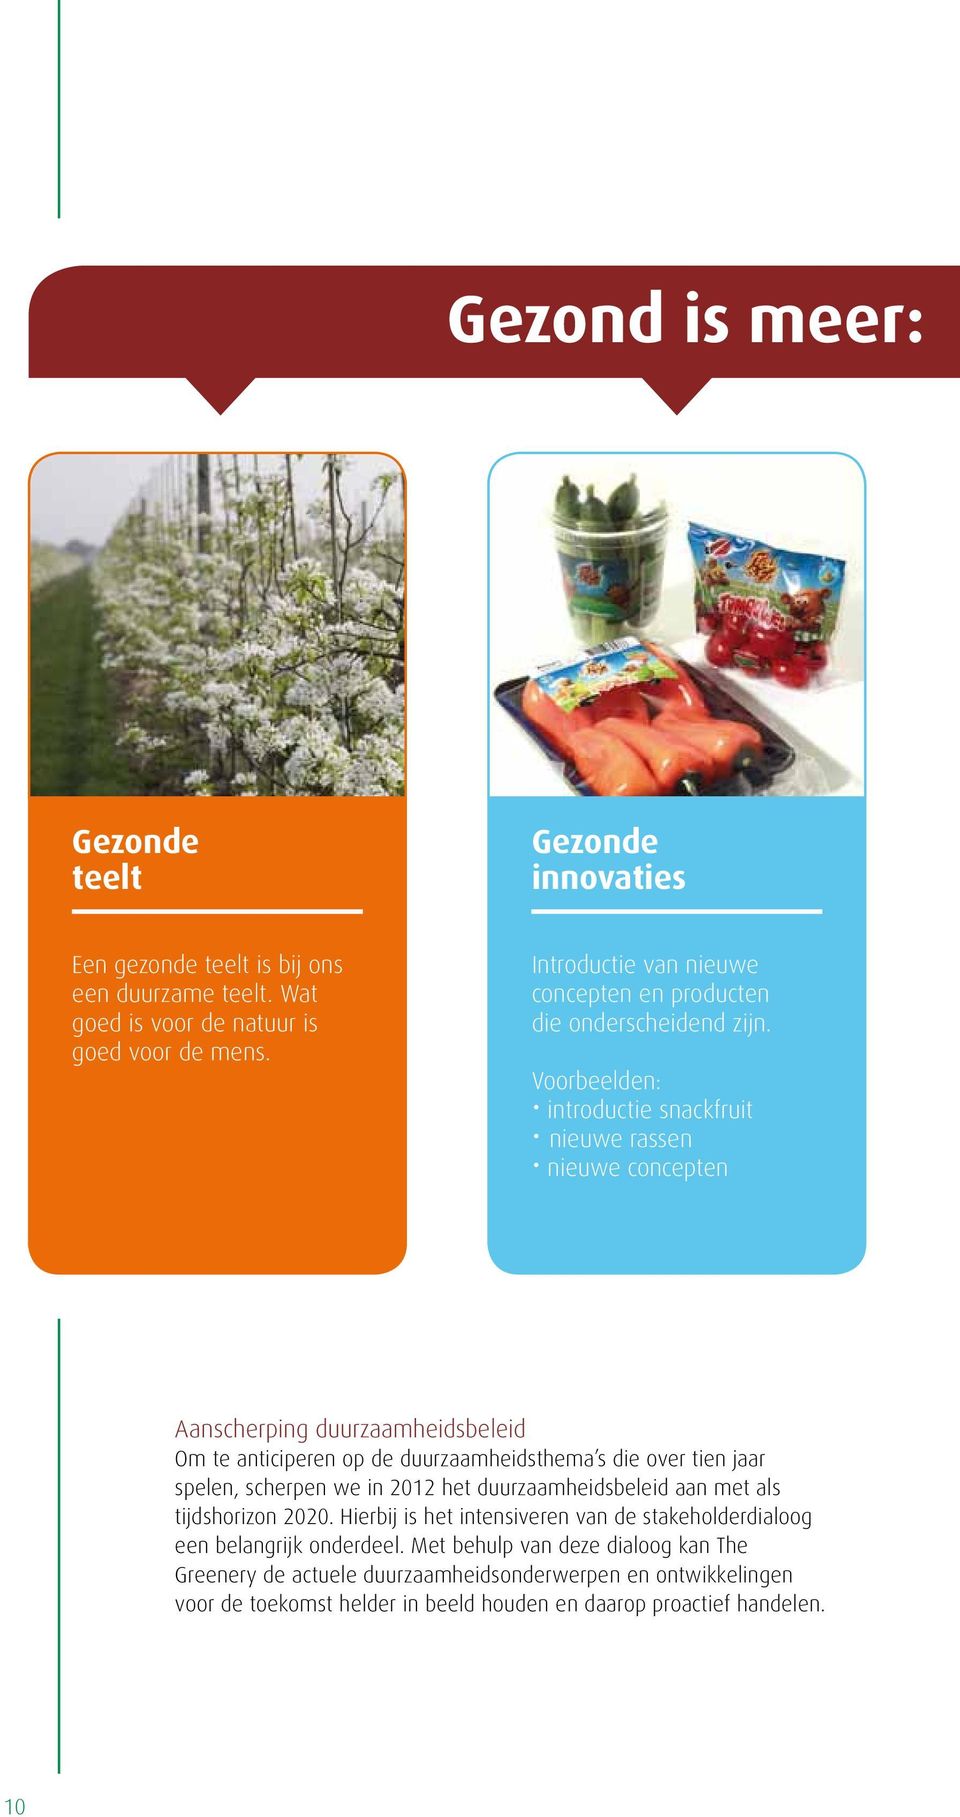 Voorbeelden: introductie snackfruit nieuwe rassen nieuwe concepten Aanscherping duurzaamheidsbeleid Om te anticiperen op de duurzaamheidsthema s die over tien jaar spelen,